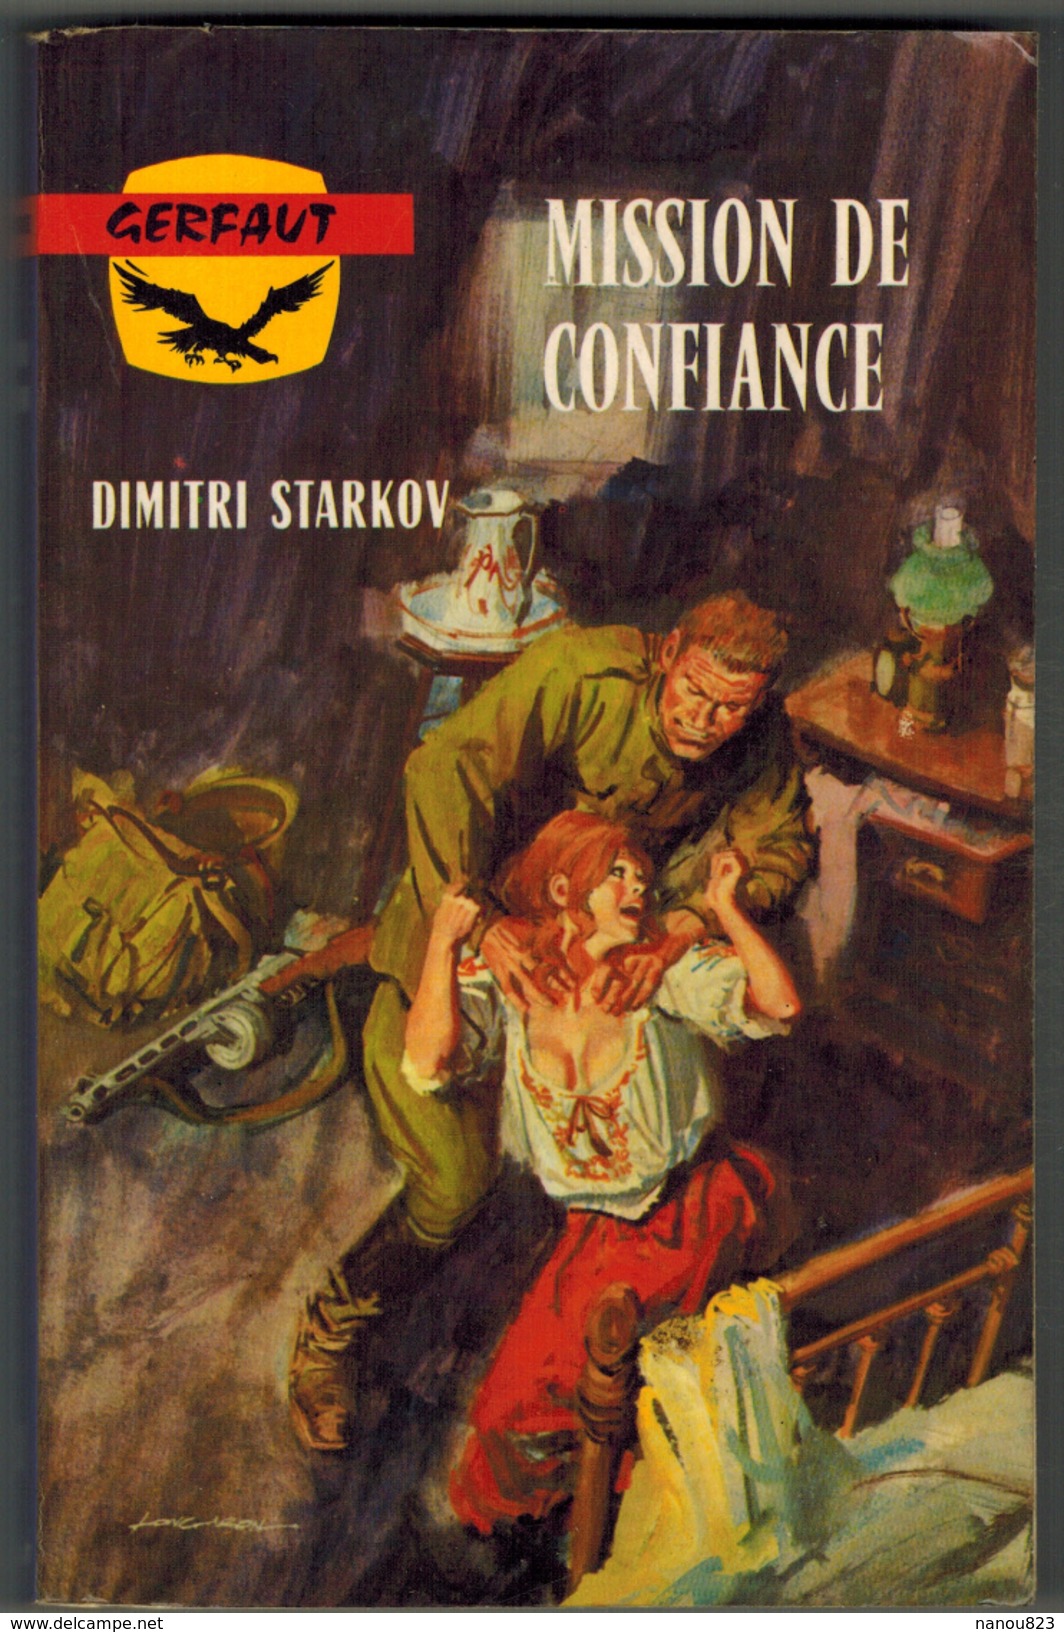 GERFAUT - Guerre - Dimitri STARKOV - Mission De Confiance - N° 230 - 1973 - Gerfaut, Ed. Du